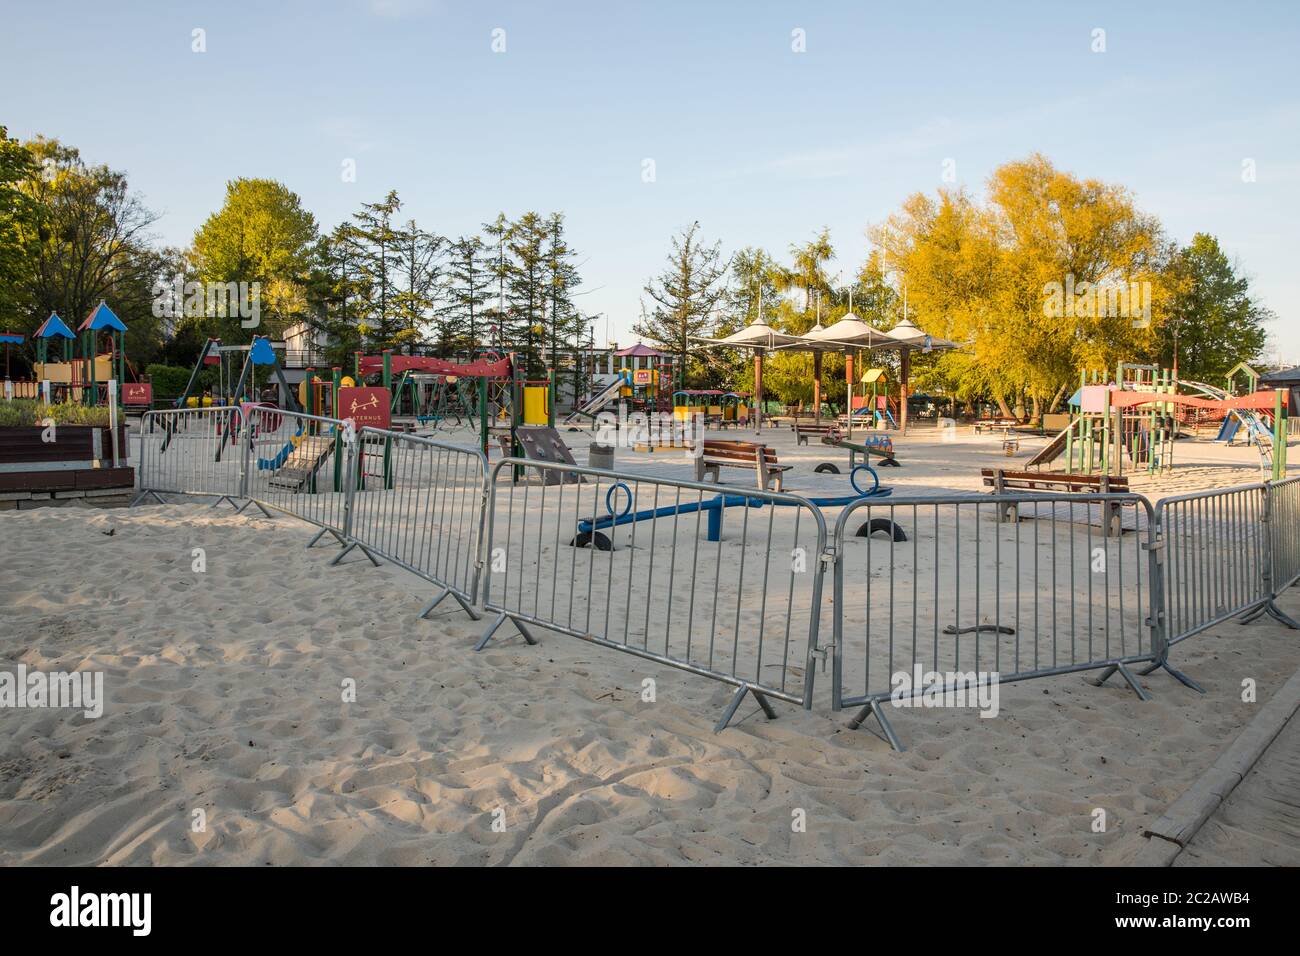 Gdynia, Polonia 09 de mayo de 2020; parque infantil cerrado en la playa durante una pandemia de coronavirus. Niños durante Covid-19 Foto de stock